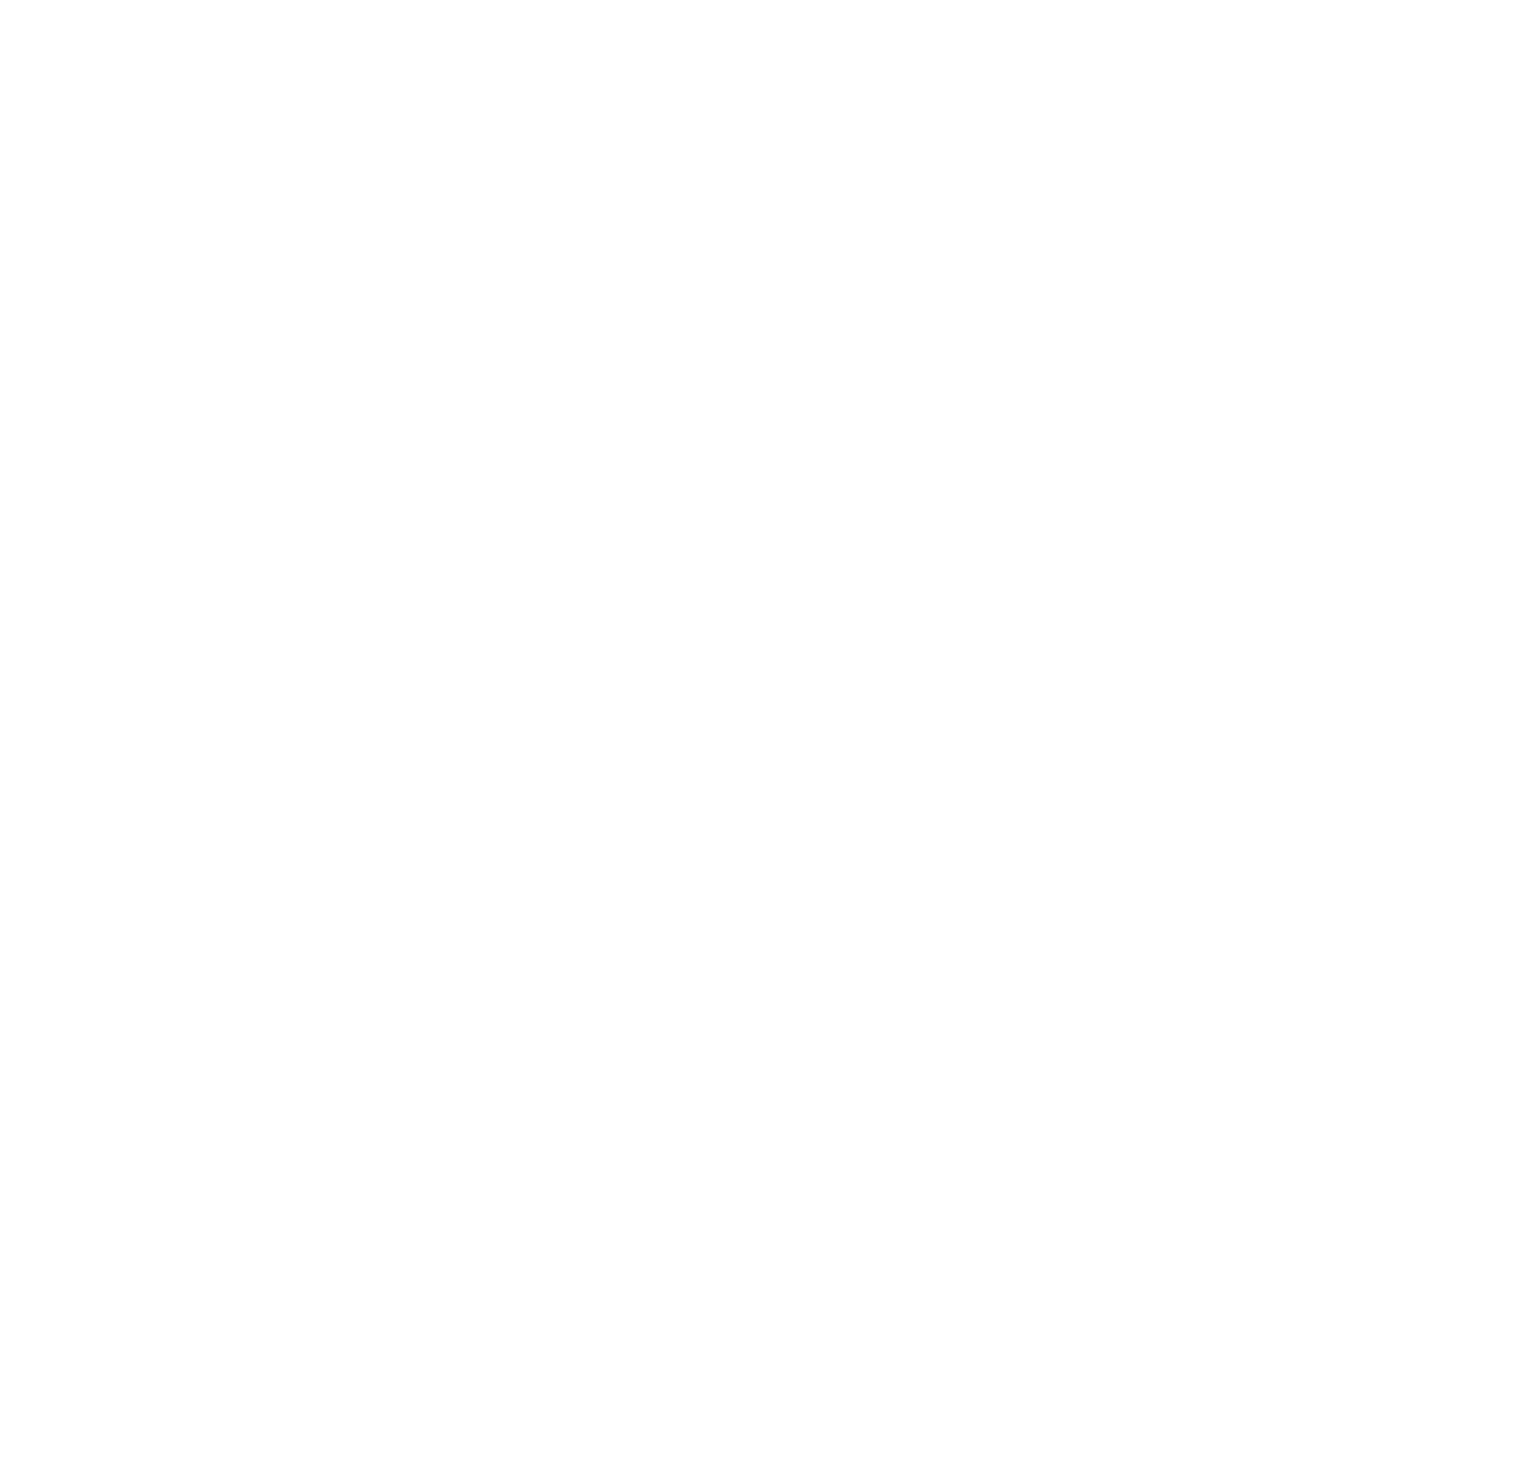 Be Original Americas